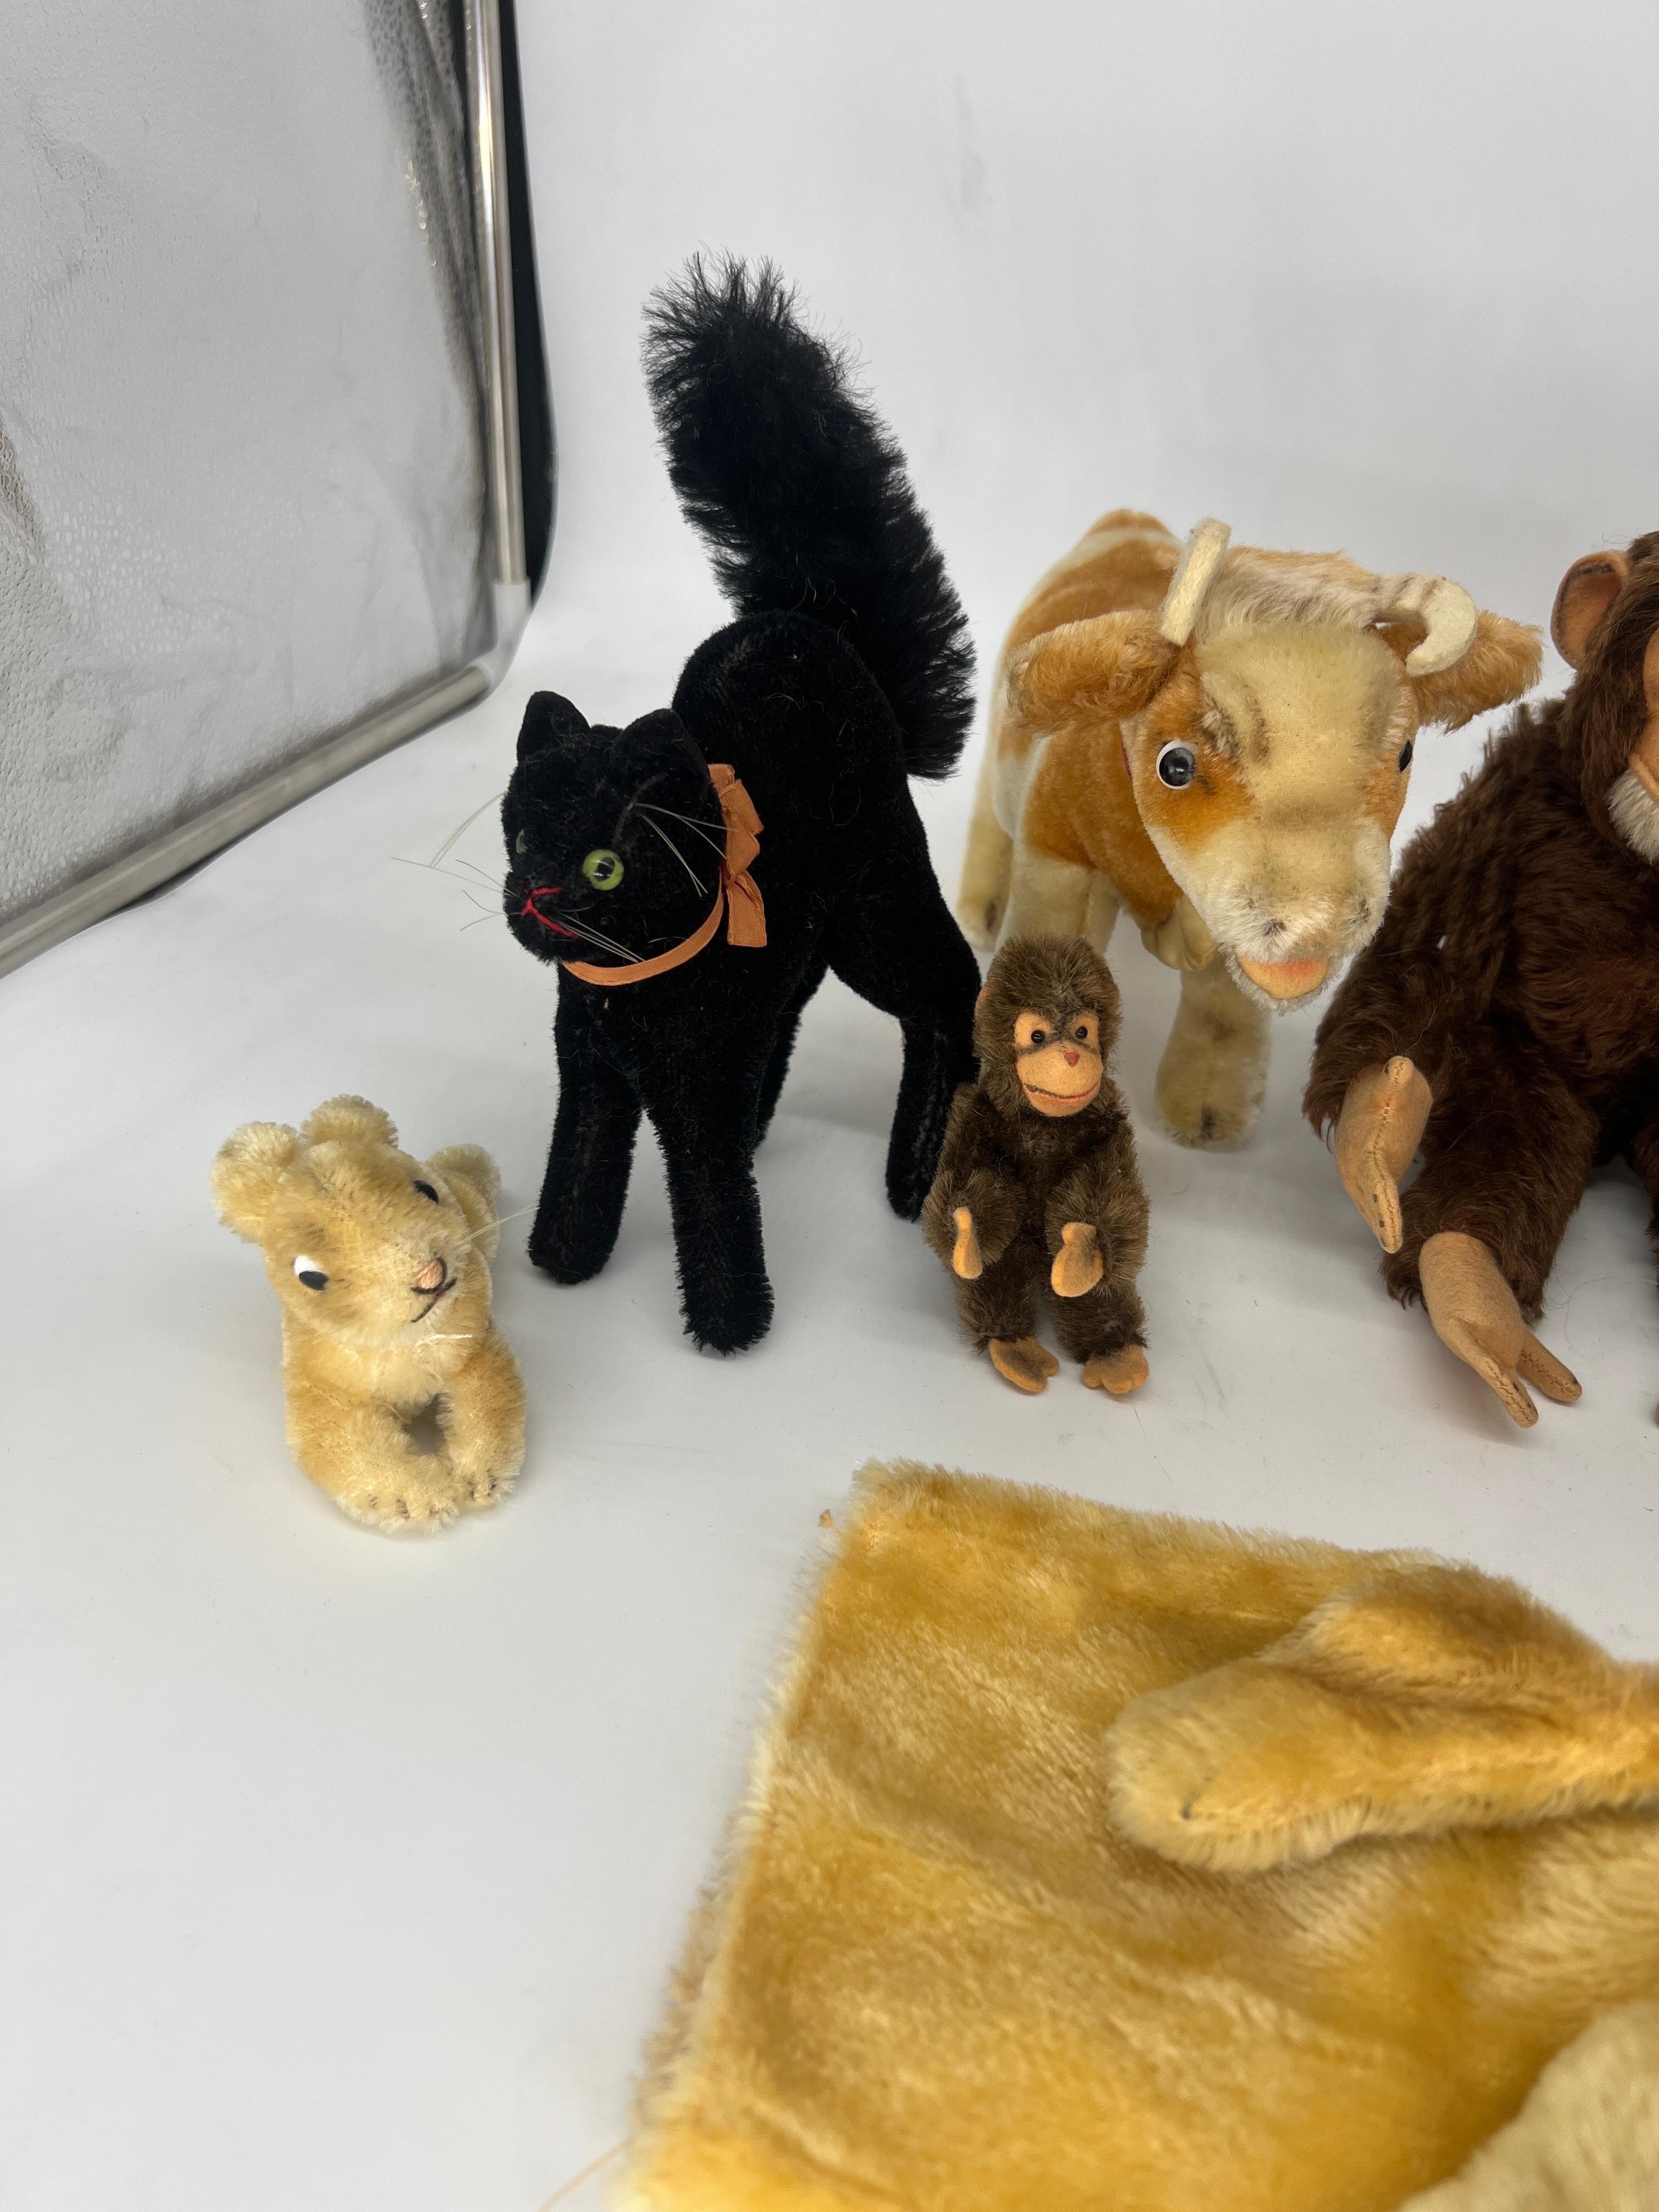 Cette collection d'animaux en peluche comprend 9 figurines :
1) Lapin miniature de Steiff (sans étiquette, tissage de la poitrine).
2) RARE Steiff Black Tom Cat (sans étiquette).
3) Singe miniature de Steiff (sans étiquette, tissage de la